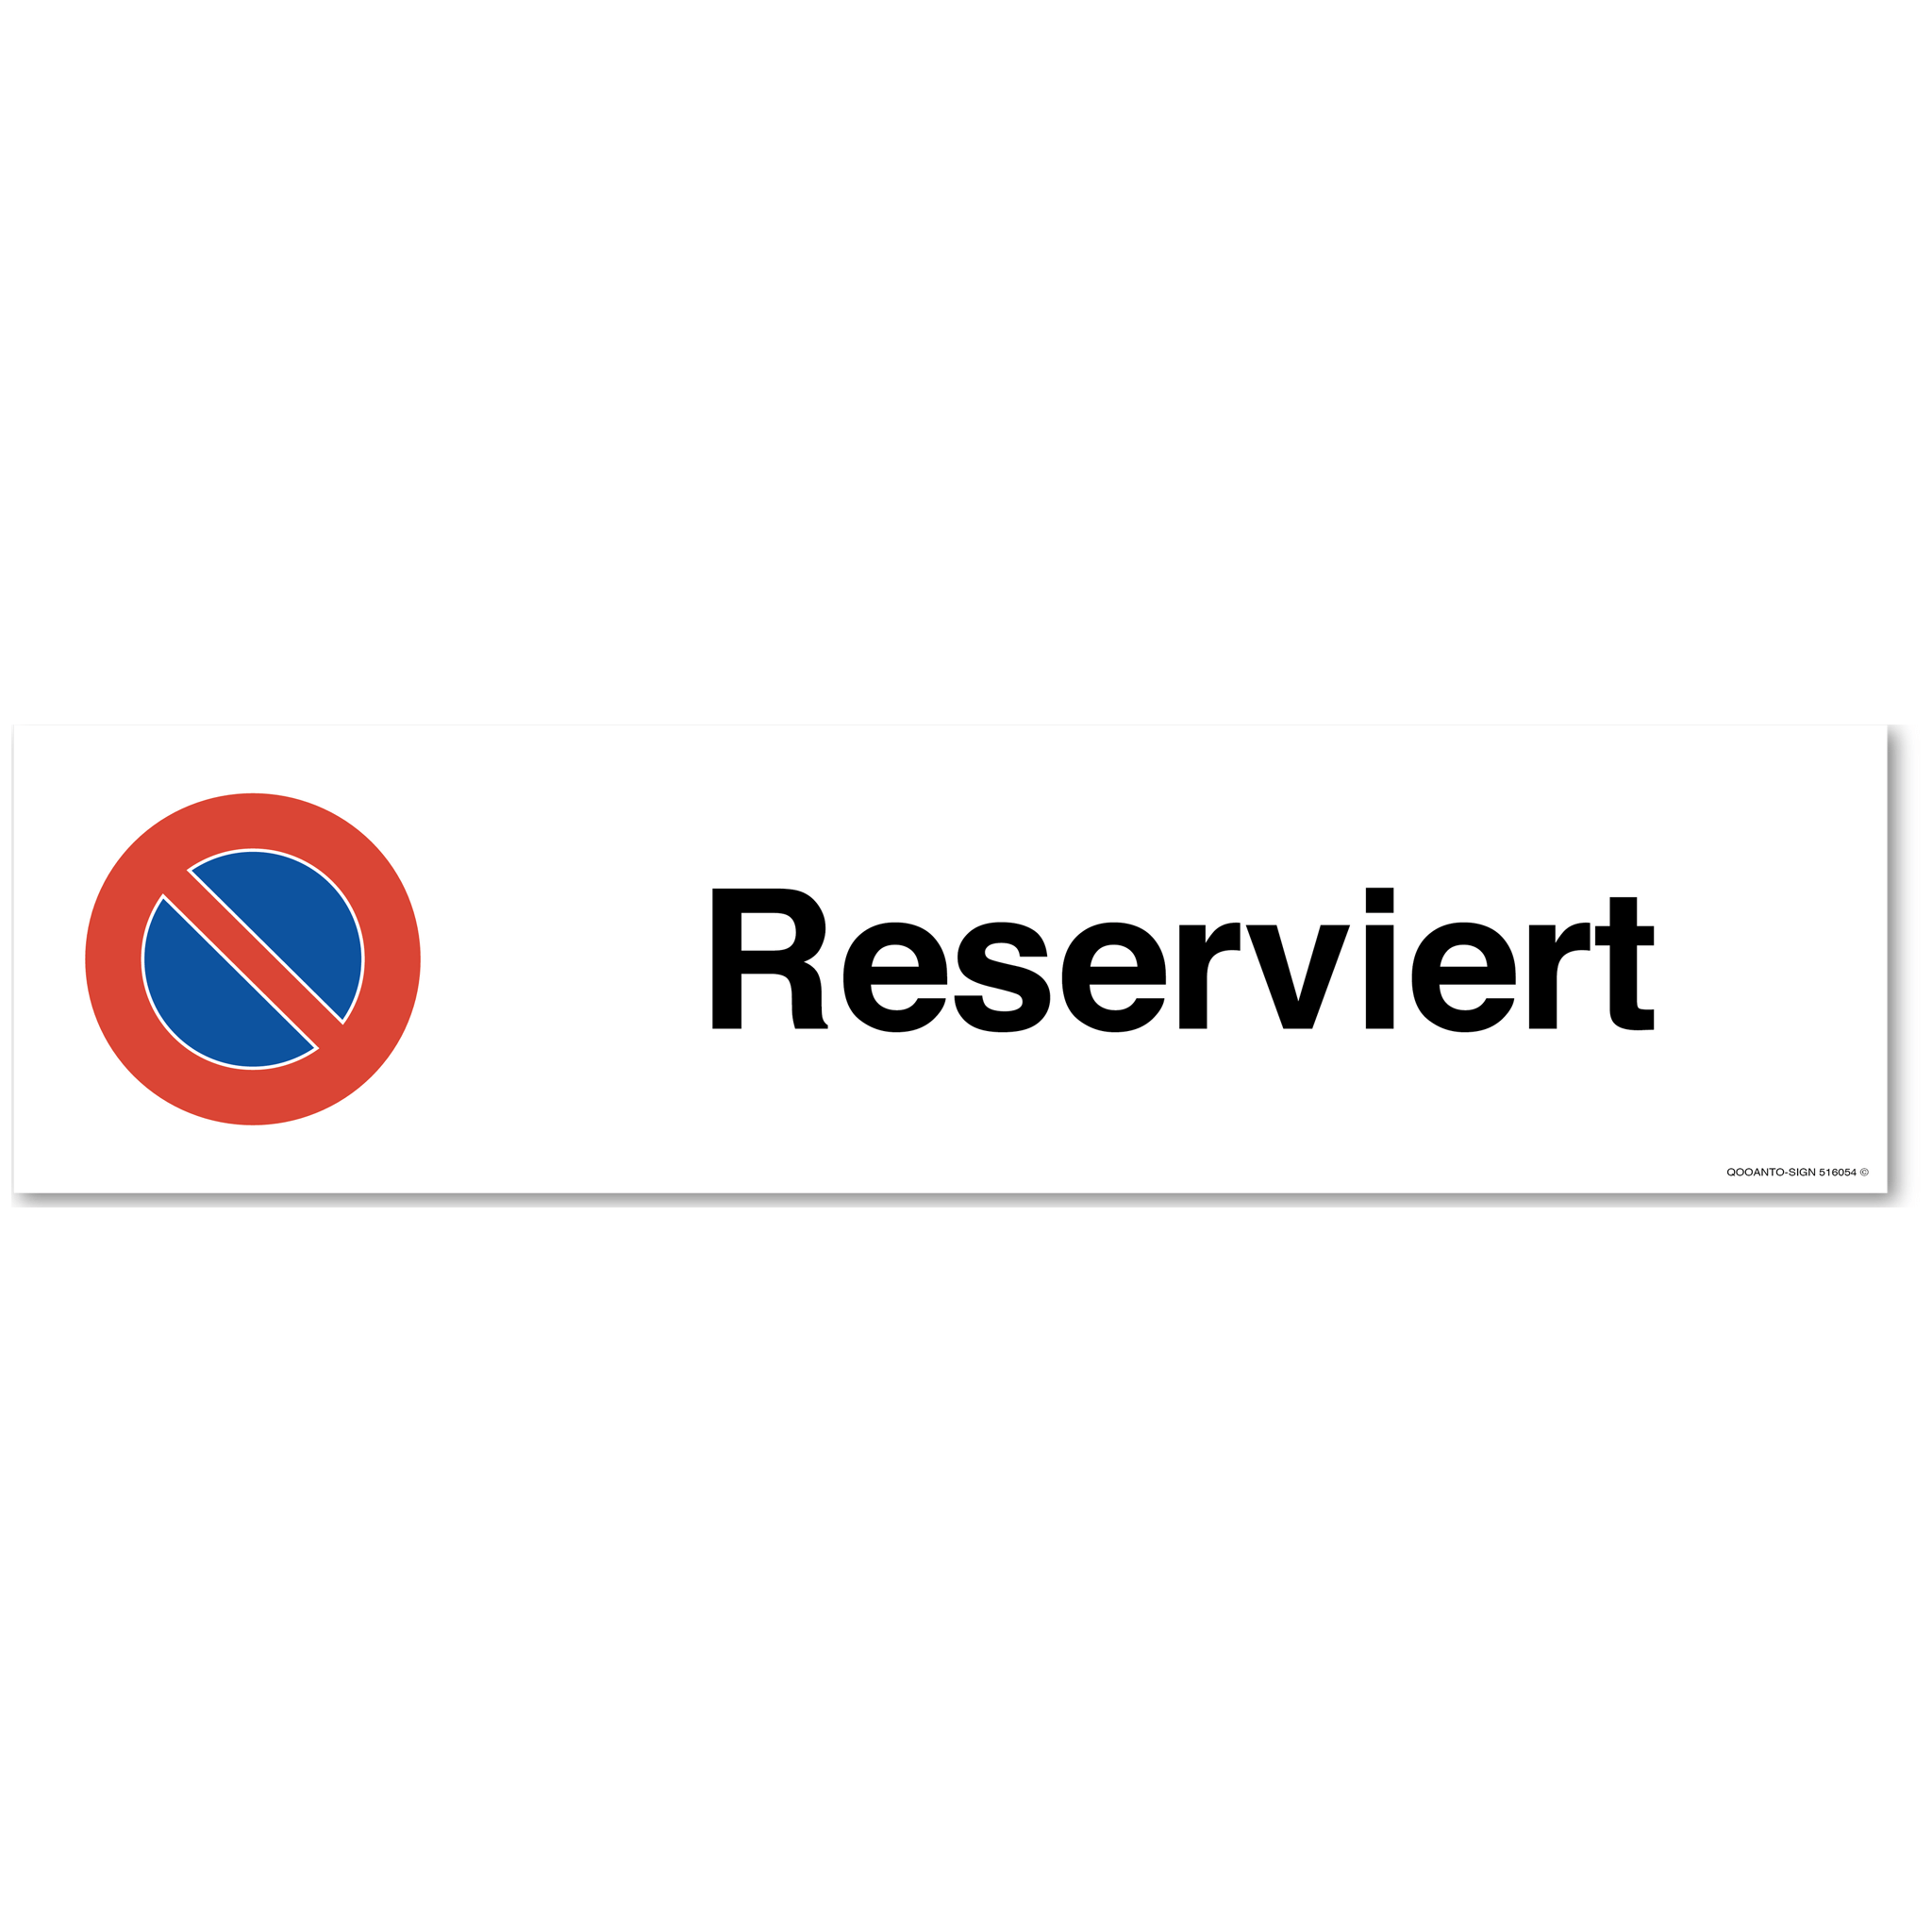 Reserviert - Parkplatzverbotsschild